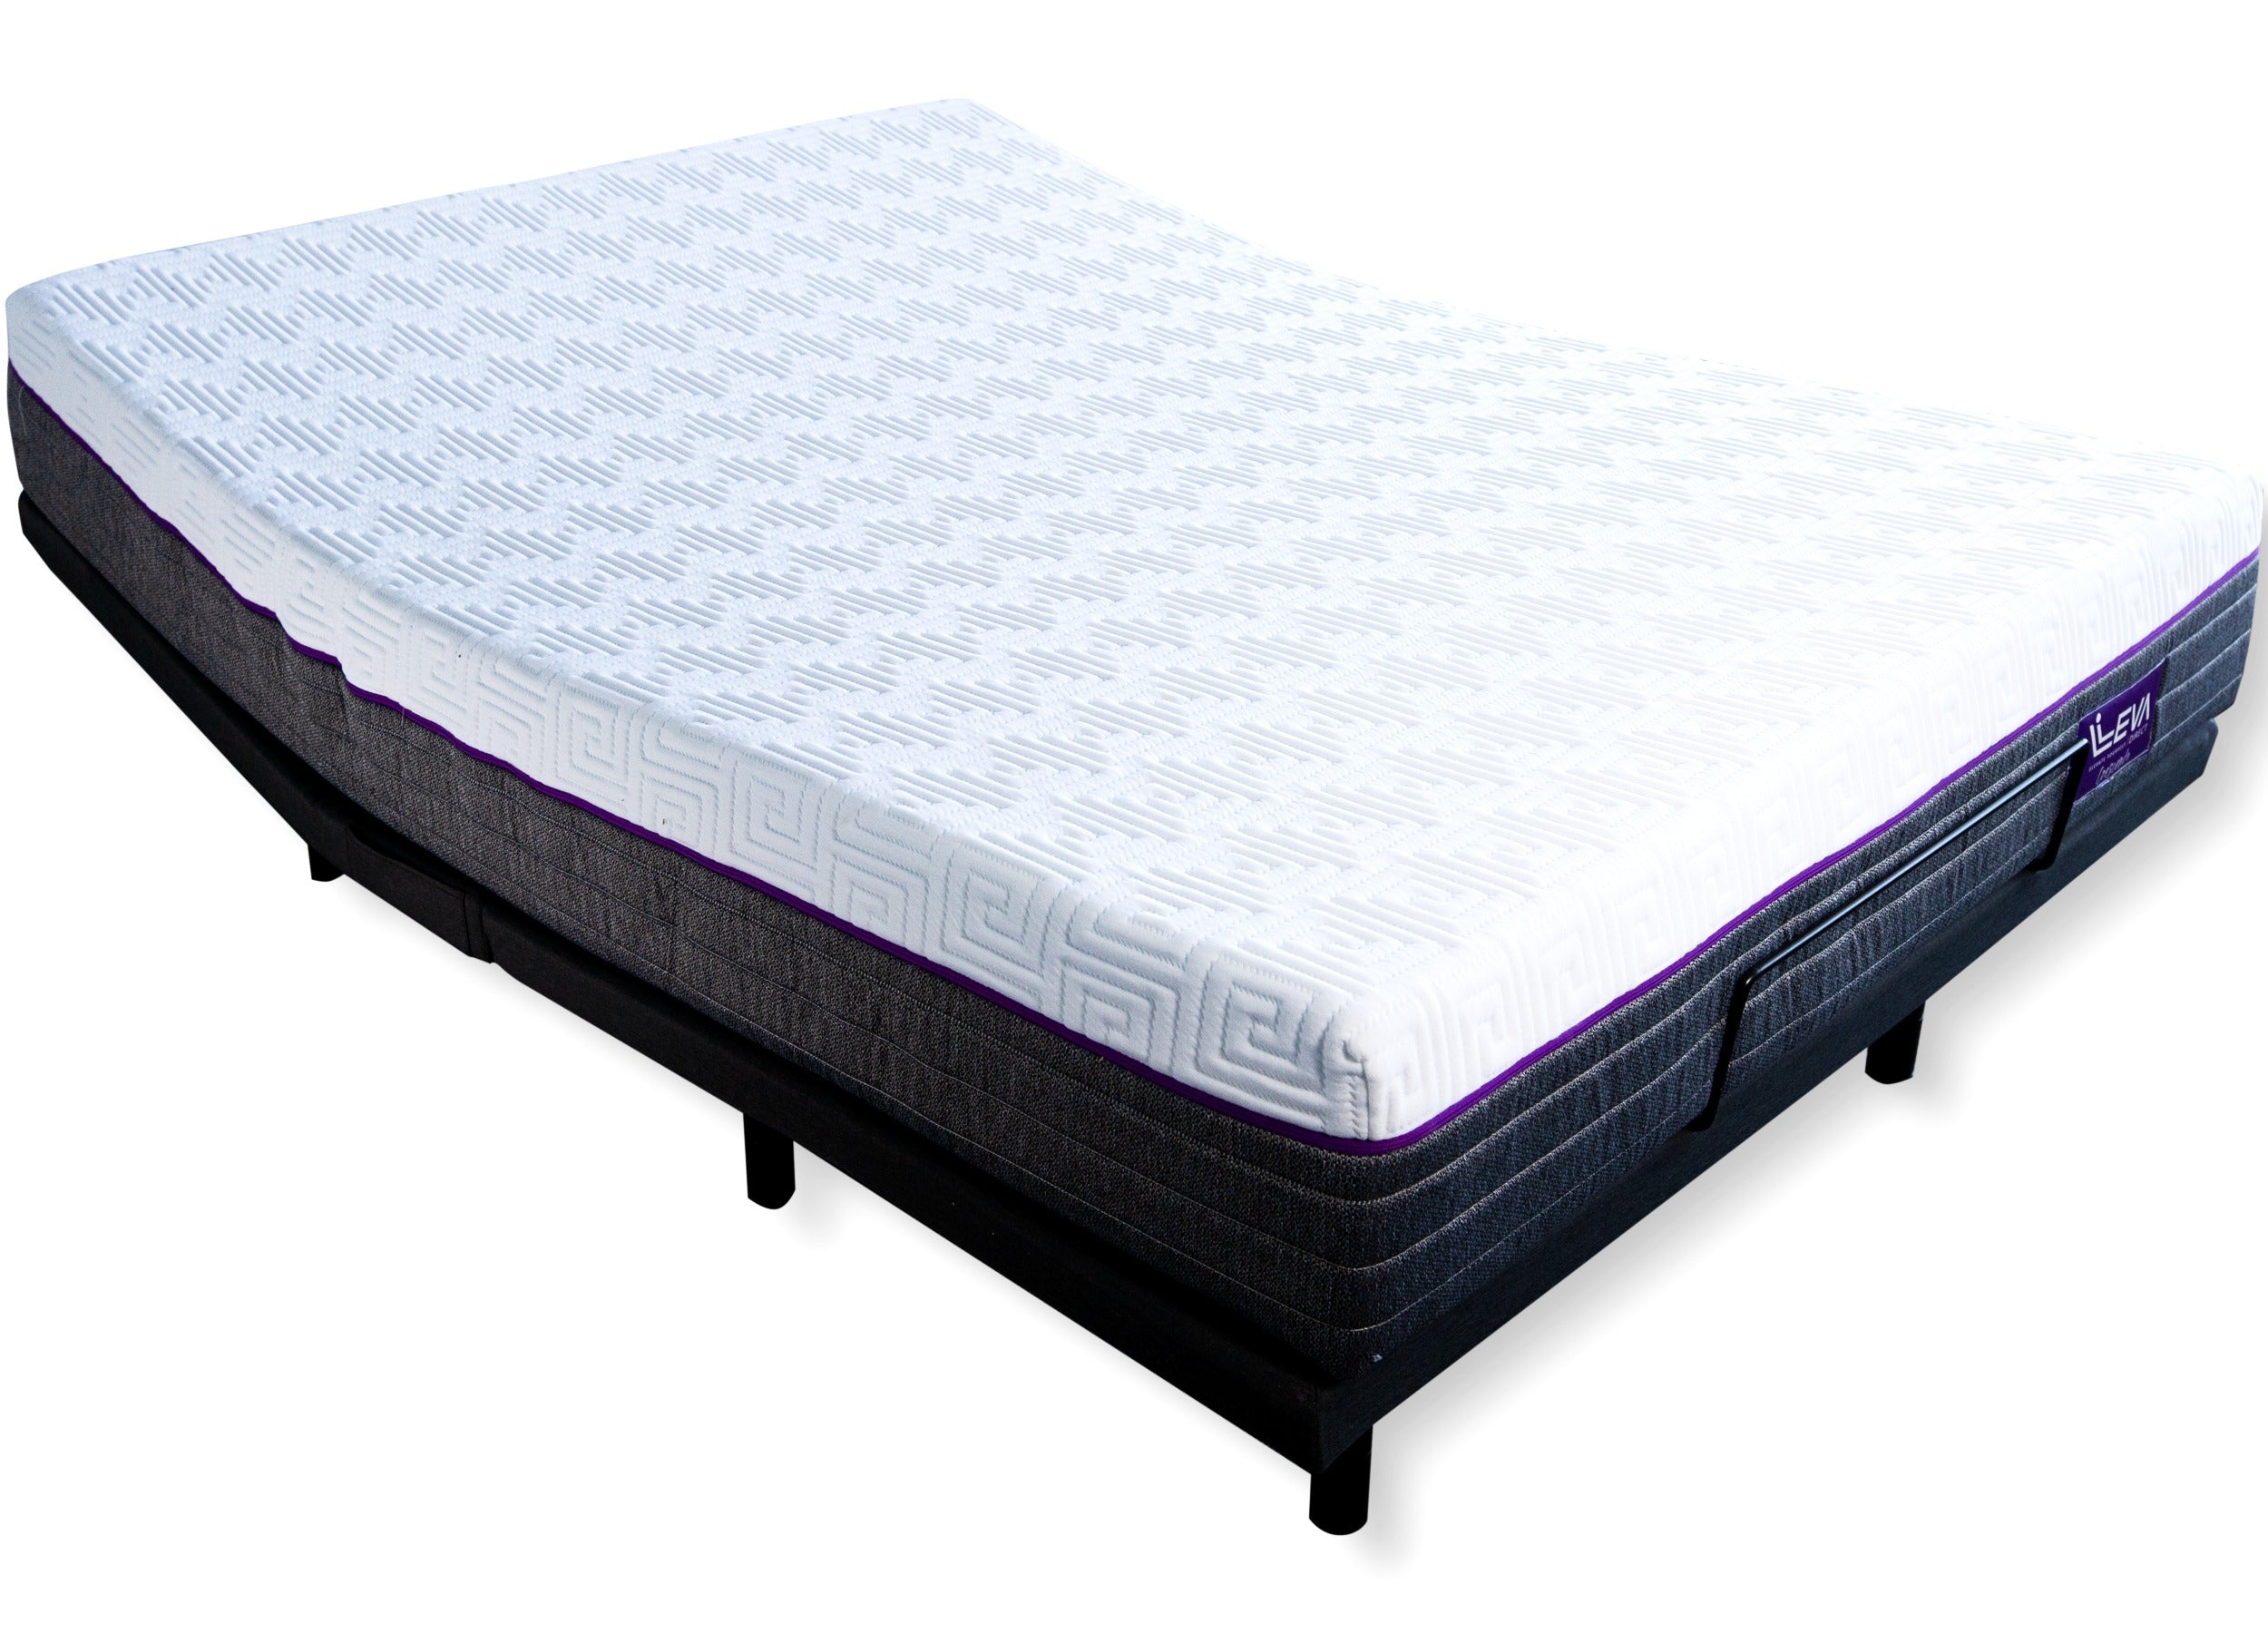 Crescendo Queen Adjustable Bed